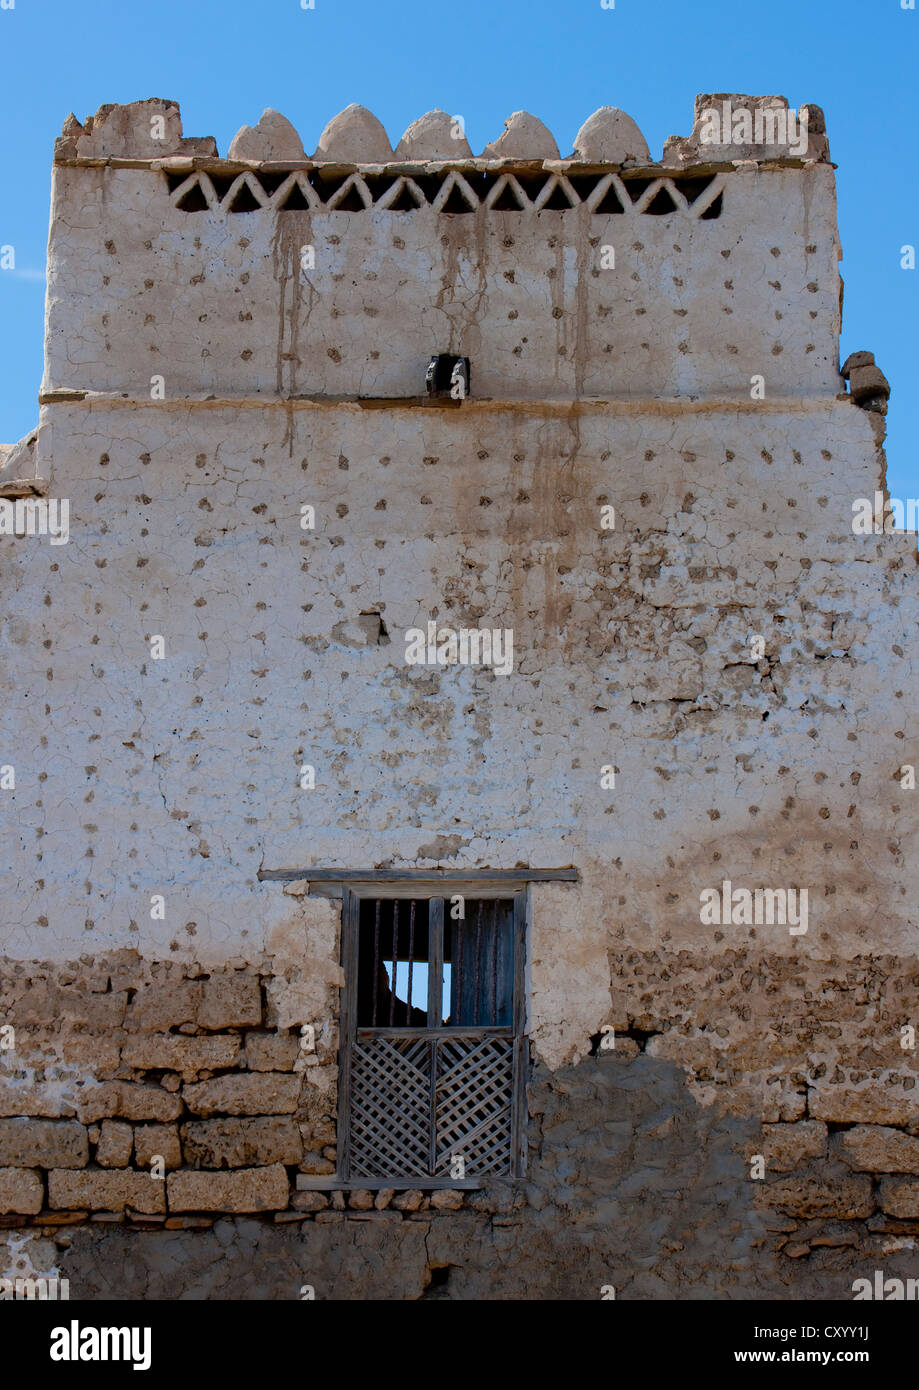 Fassade der Marktlücke mit einem Schlupfloch, Mirbat, Oman Stockfoto